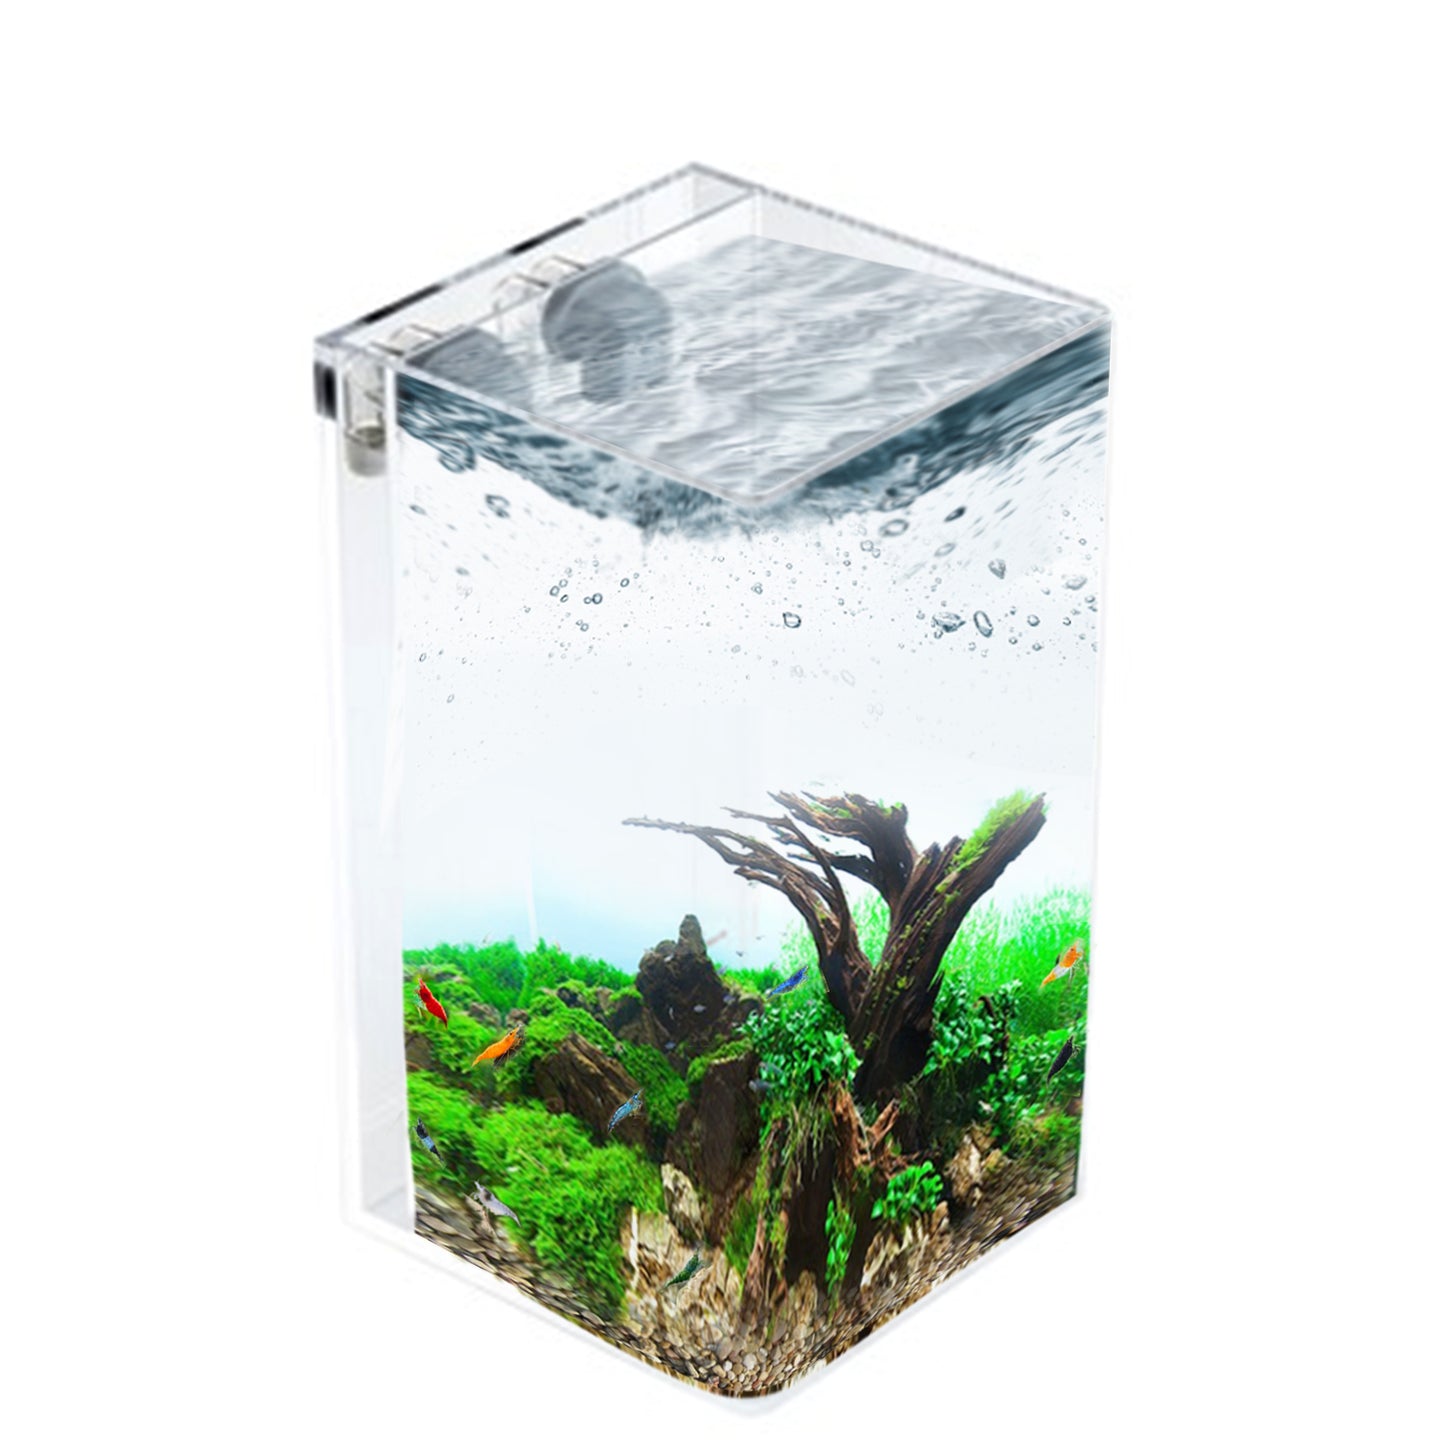 2.5 Gallon Tall Self-Cleaning Aquarium Kit | Lid | Waterfall Basin | Dazzle LED